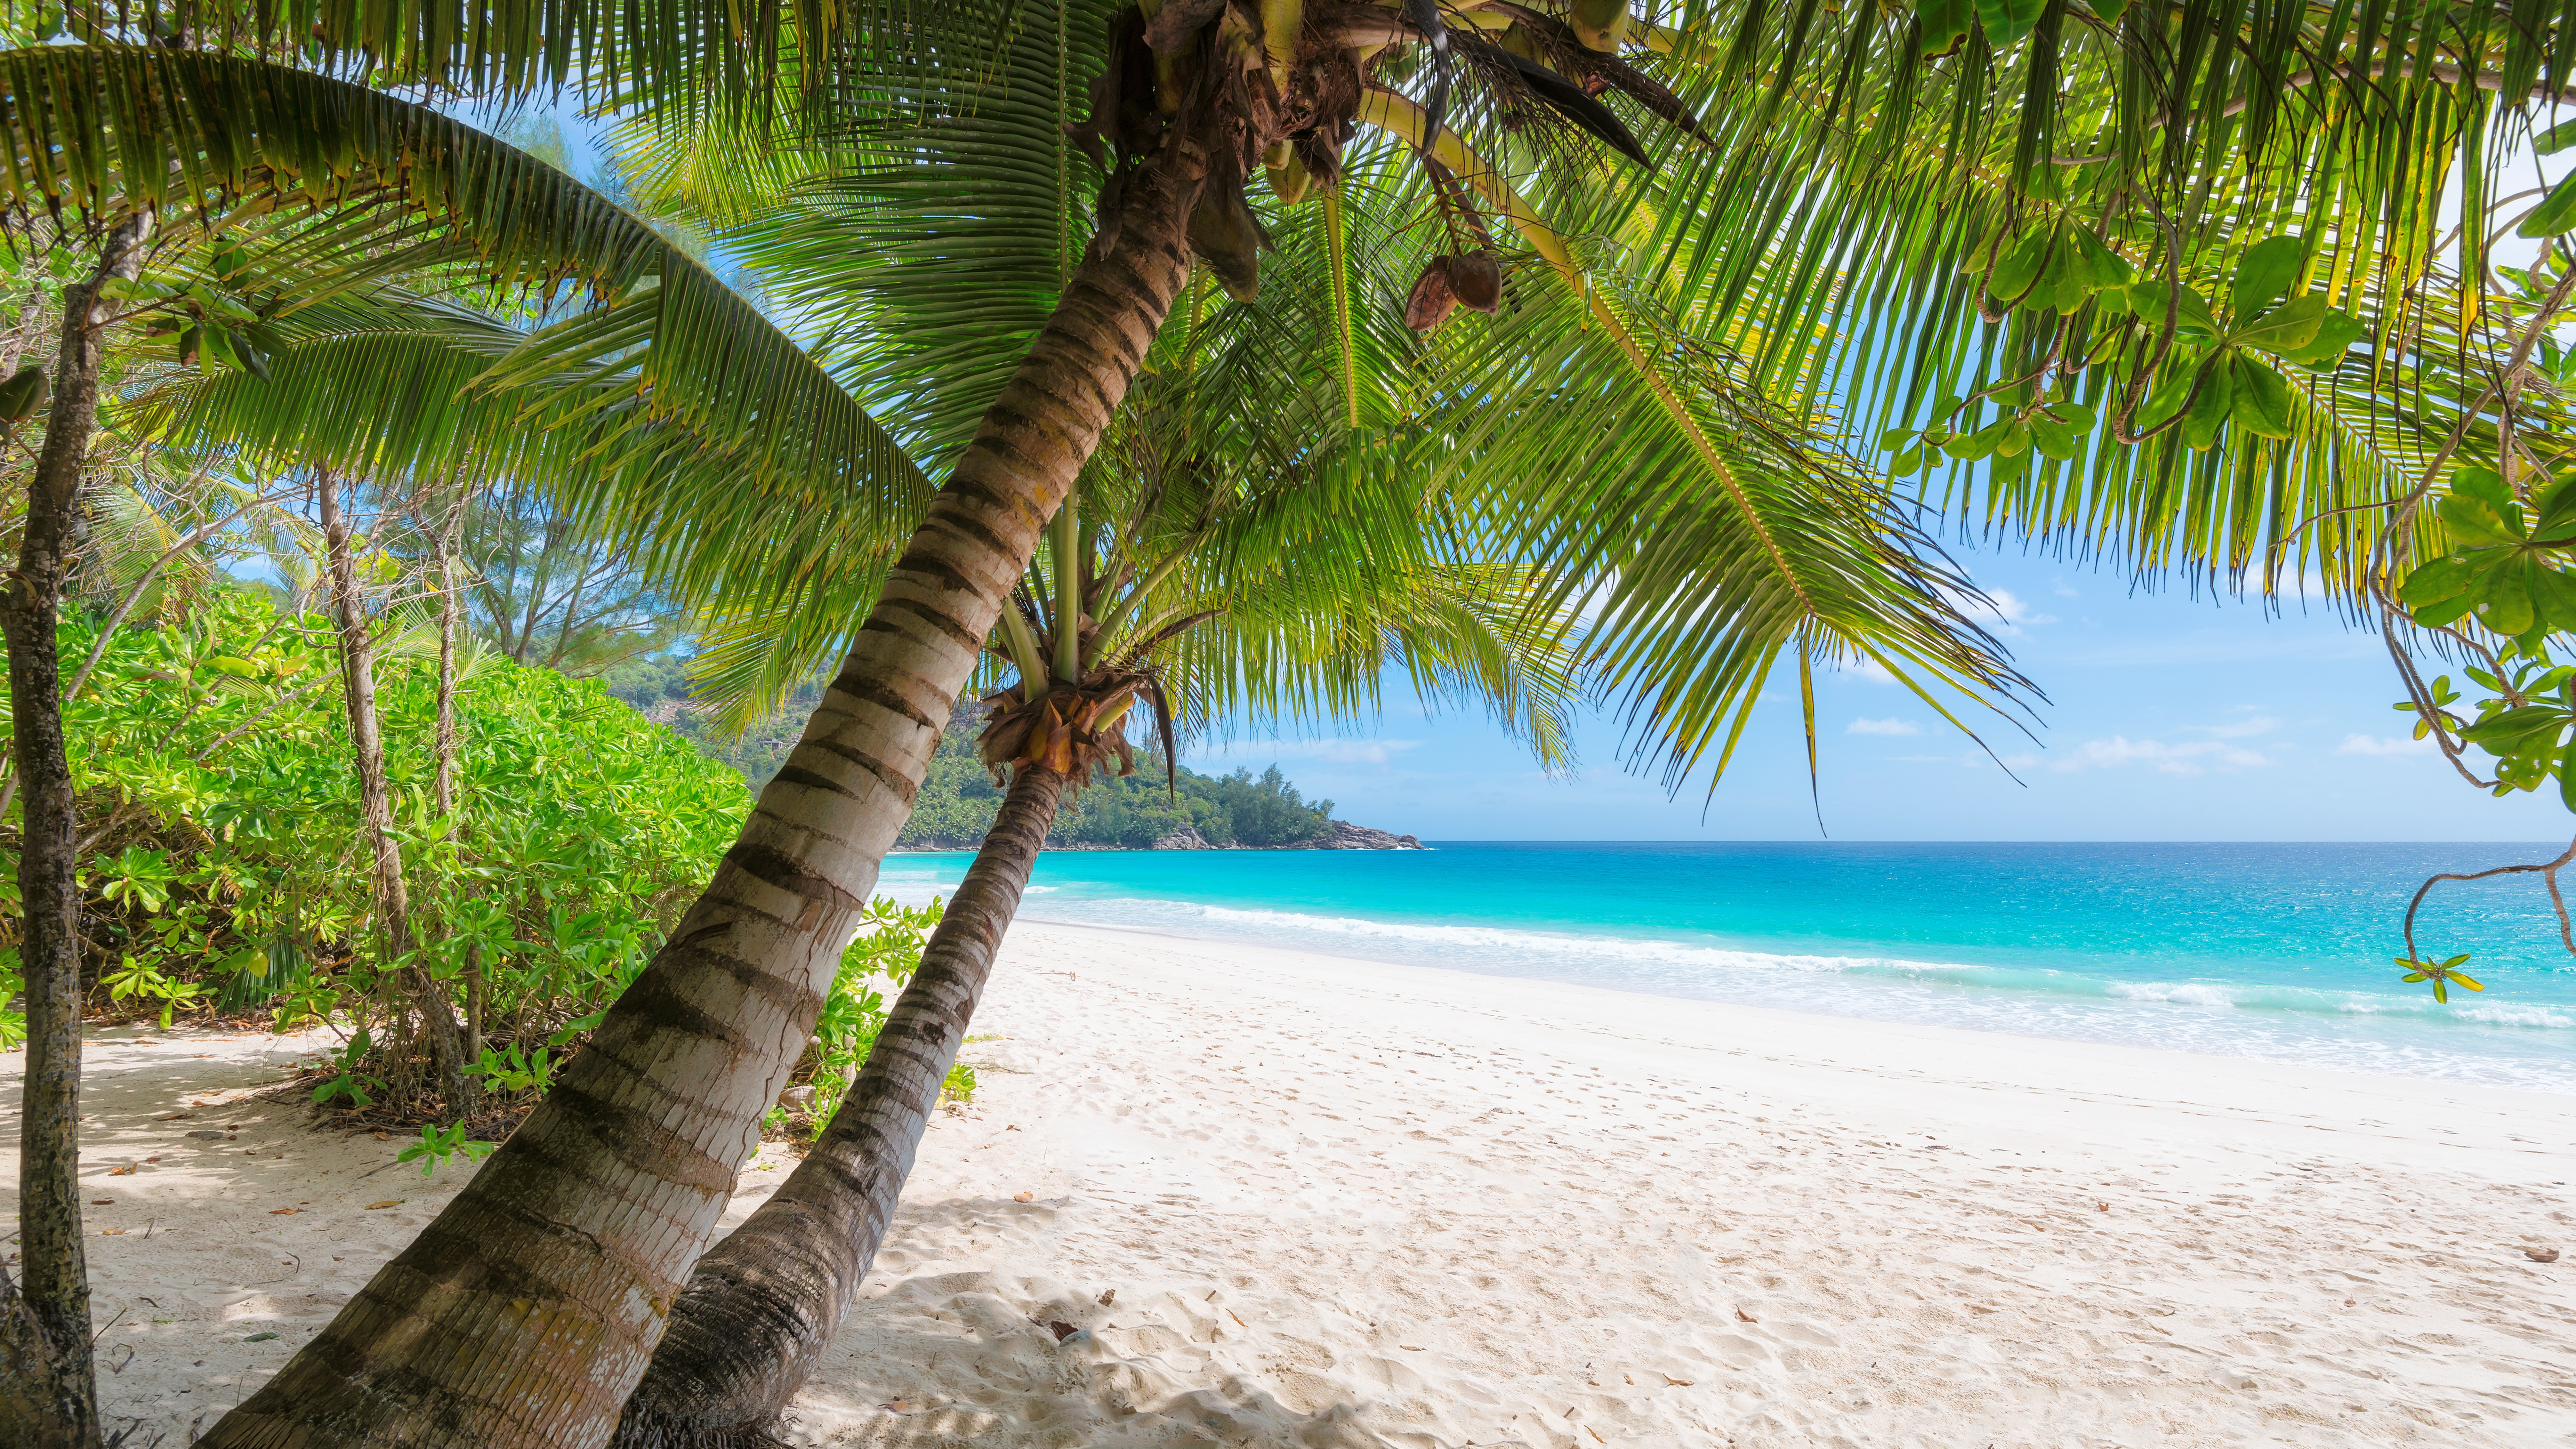 岸边, 热带地区, 加勒比, 度假, 度假村 壁纸 7680x4320 允许